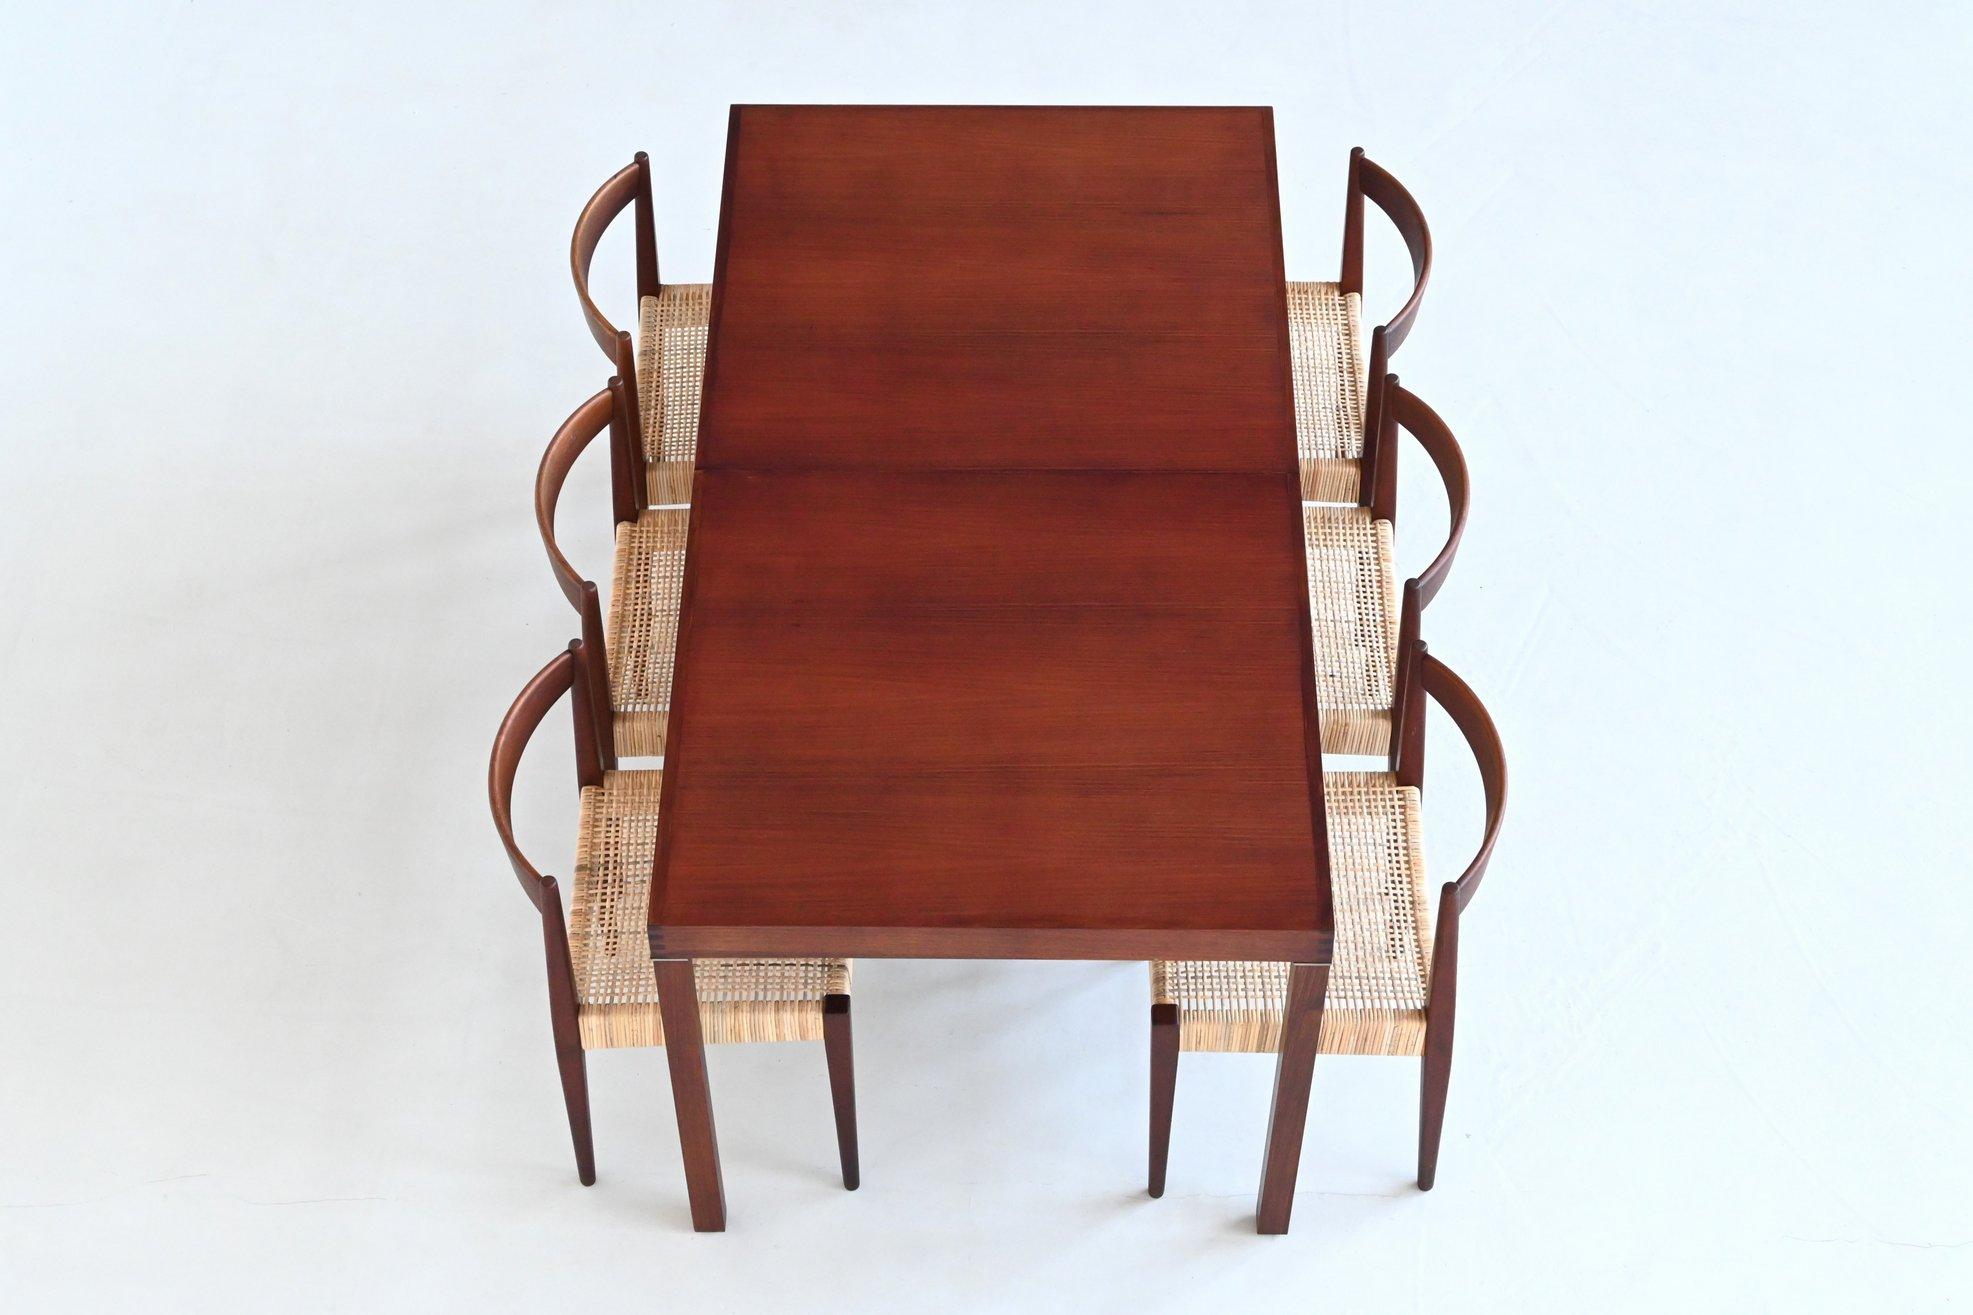 Schöner ausziehbarer Esstisch, entworfen von Inger Klingenberg für Fristho Franeker, Niederlande 1960. Er ist aus Palisanderholz gefertigt, das durch seine schöne Maserung und den warmen Ton einen natürlichen Ausdruck erhält. Dieser gut verarbeitete